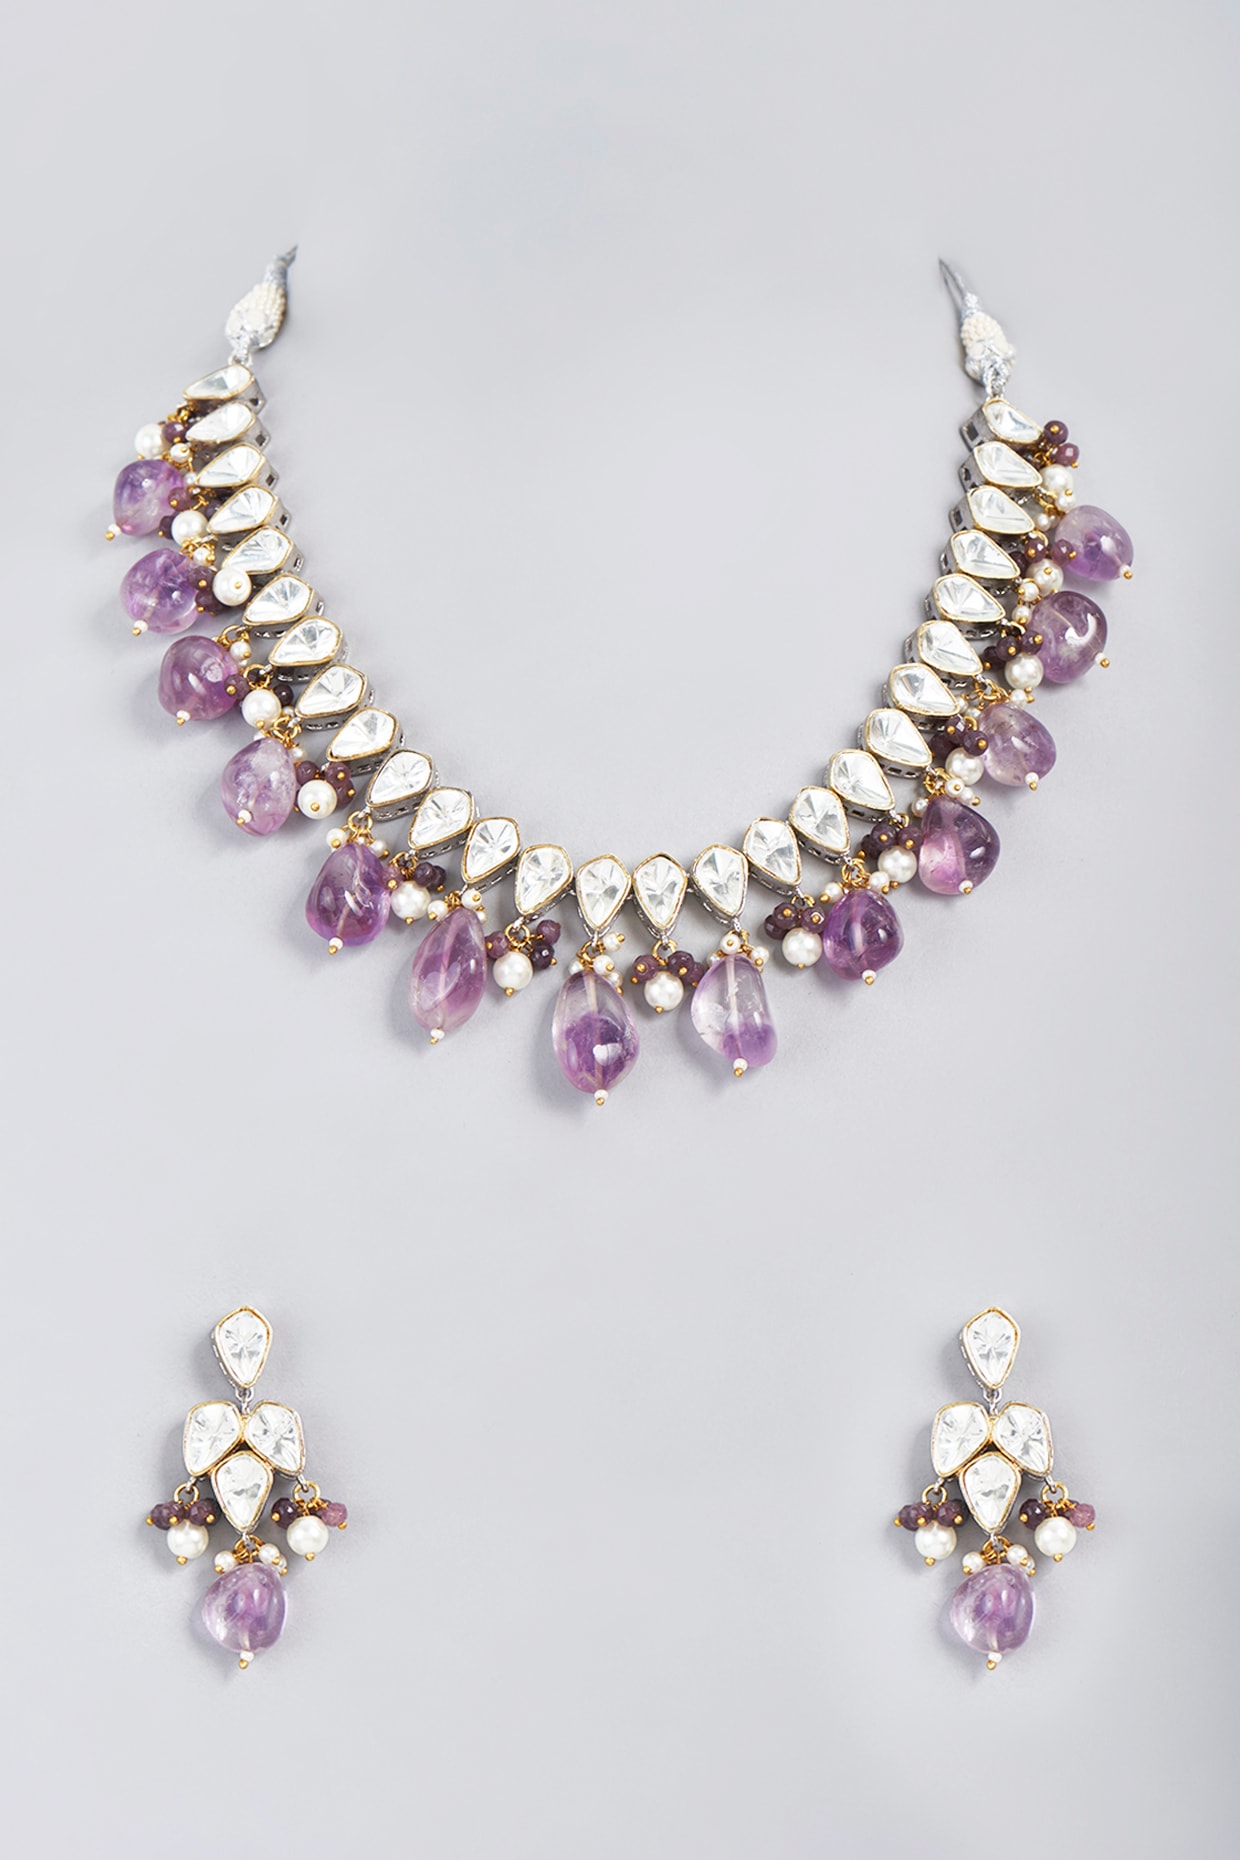 Beaded Necklace – Madeinindia Beads